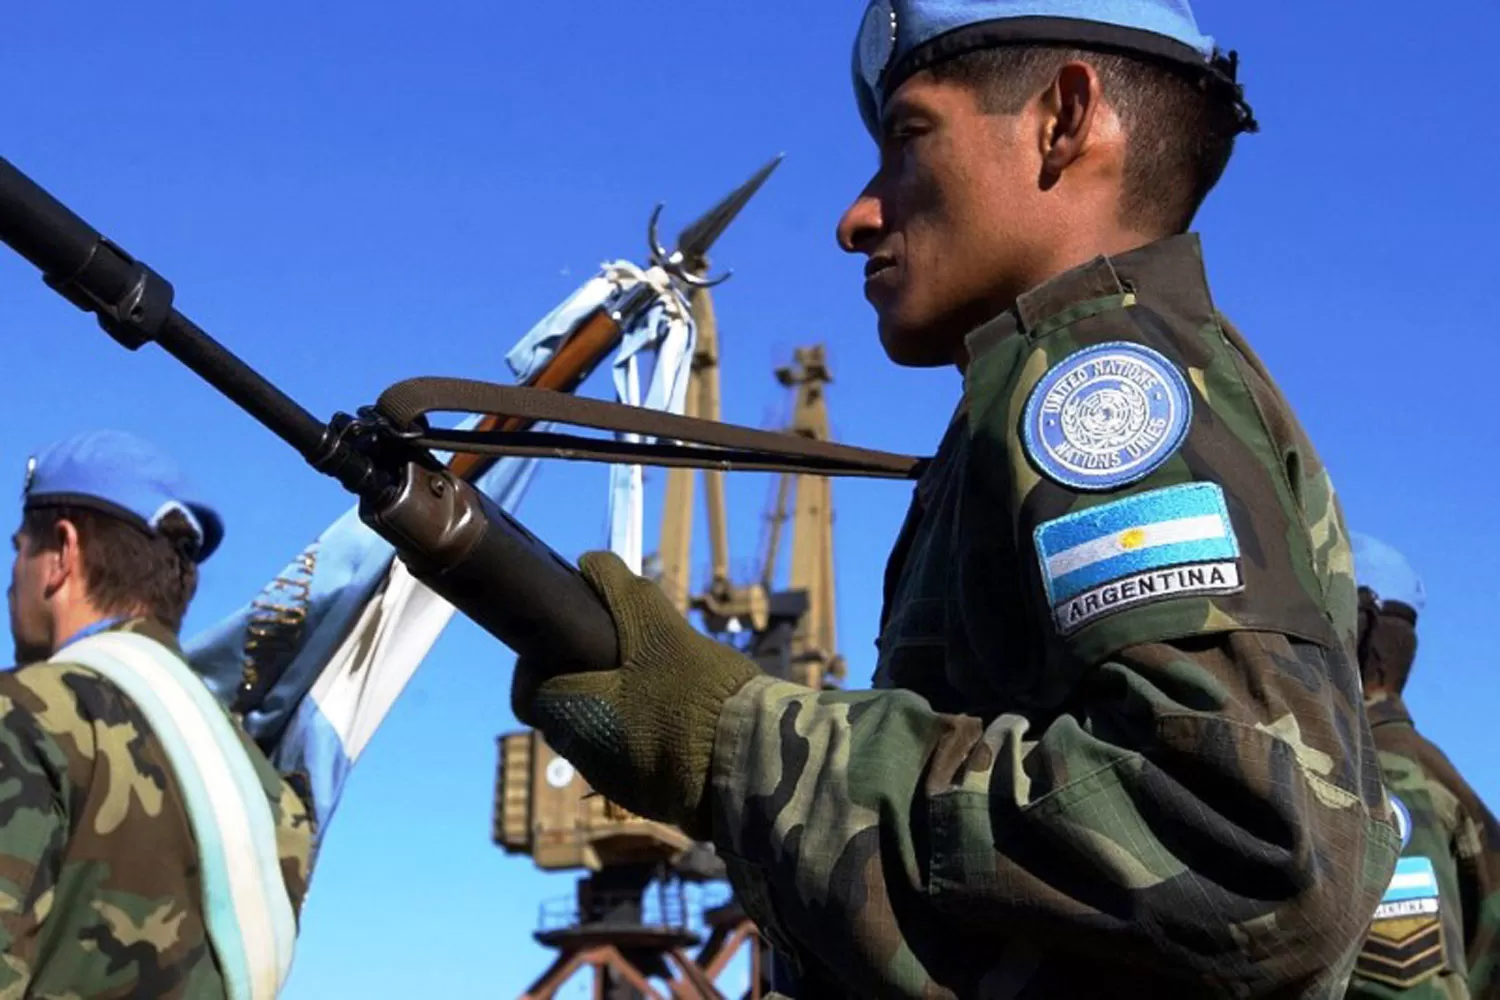 Legisladores tucumanos piden que el Congreso cree un servicio militar obligatorio y comunitario  